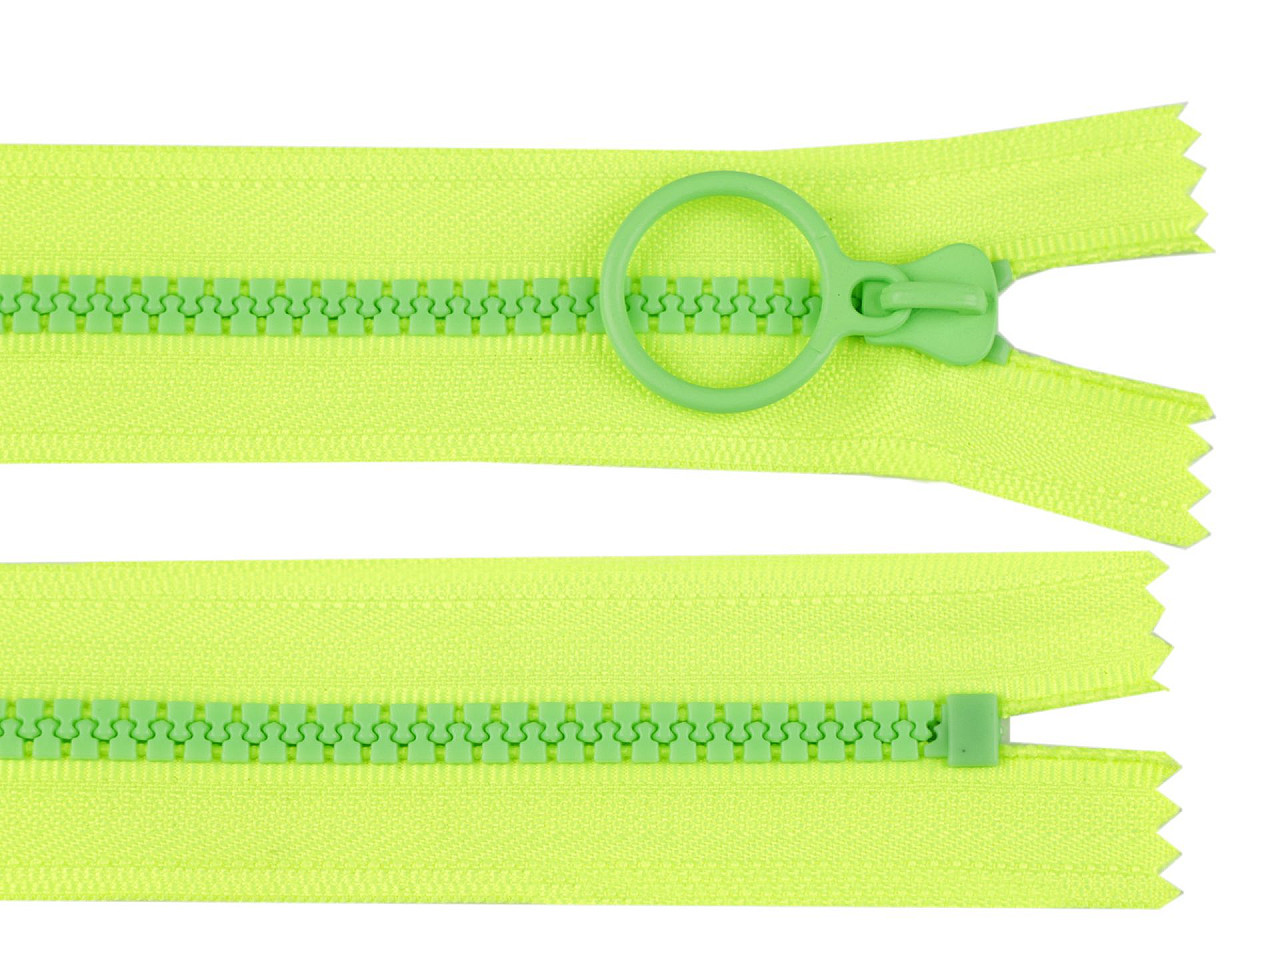 Kostěný zip barevný No 5 délka 20 cm, barva 7 zelená ostrá sv. zelená